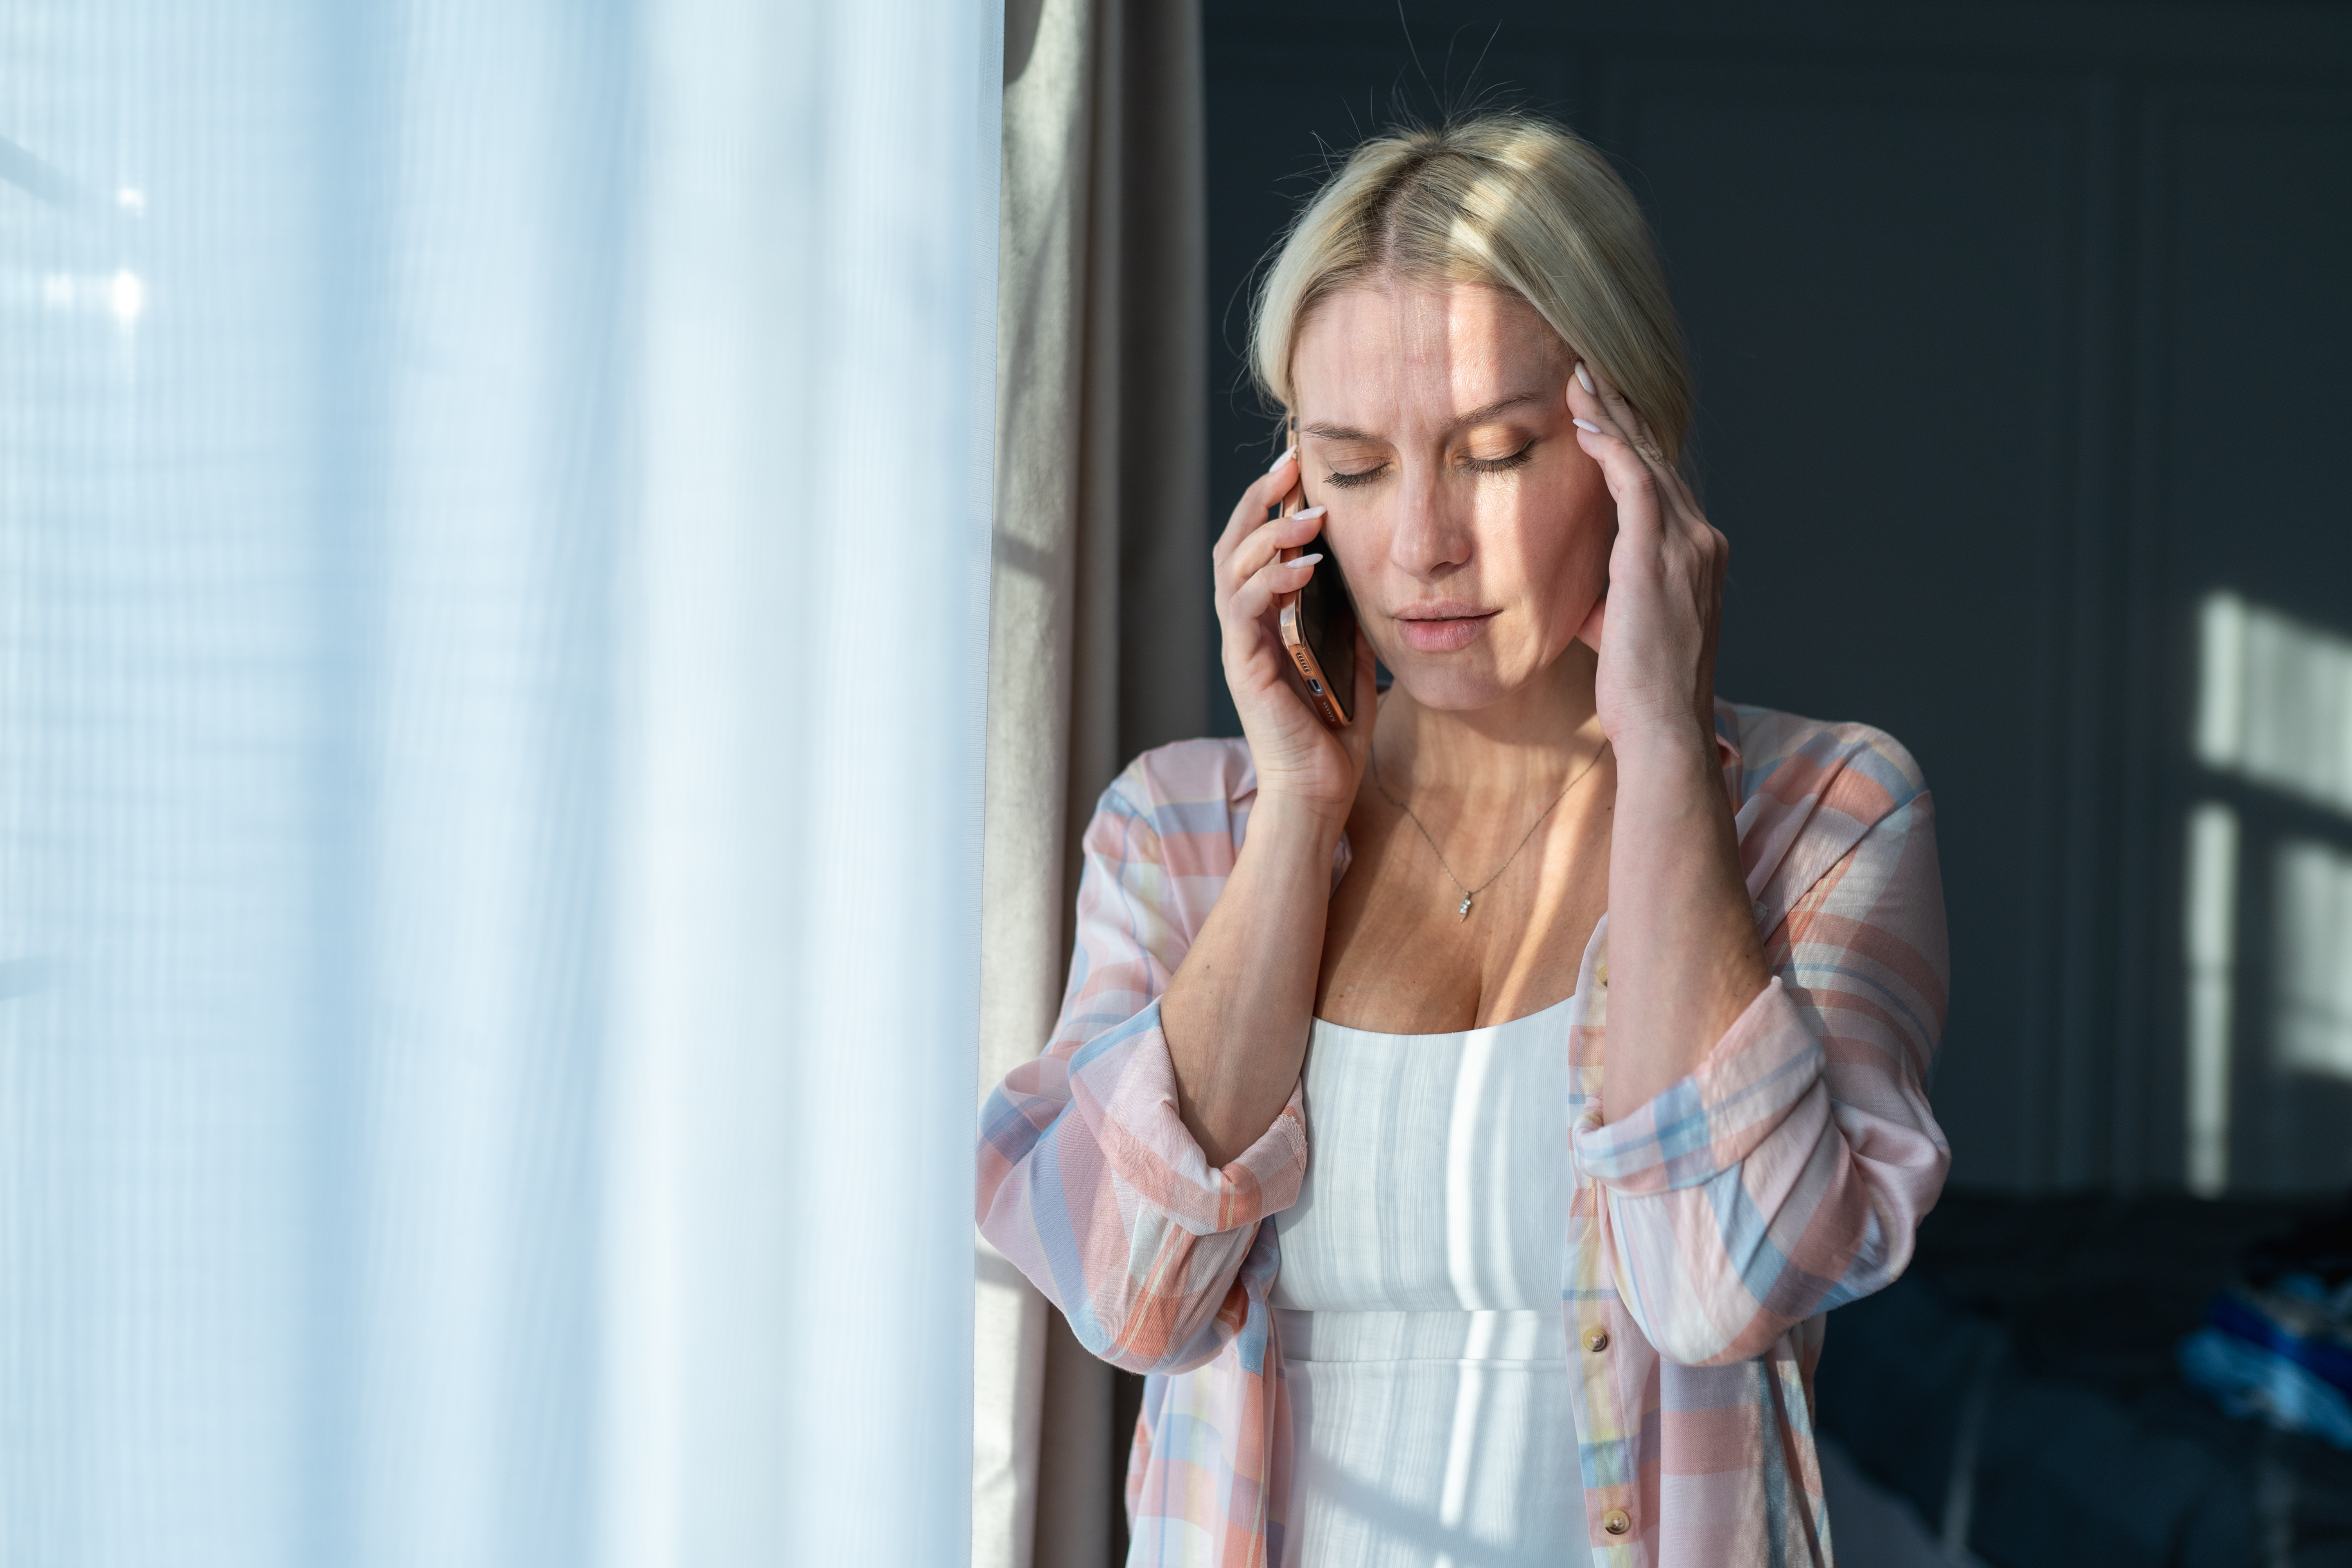 Kopfschmerzen und Verzweiflung. Blonde Frau telefoniert, während sie ihren Kopf am hellen Fenster berührt | Quelle: Getty Images